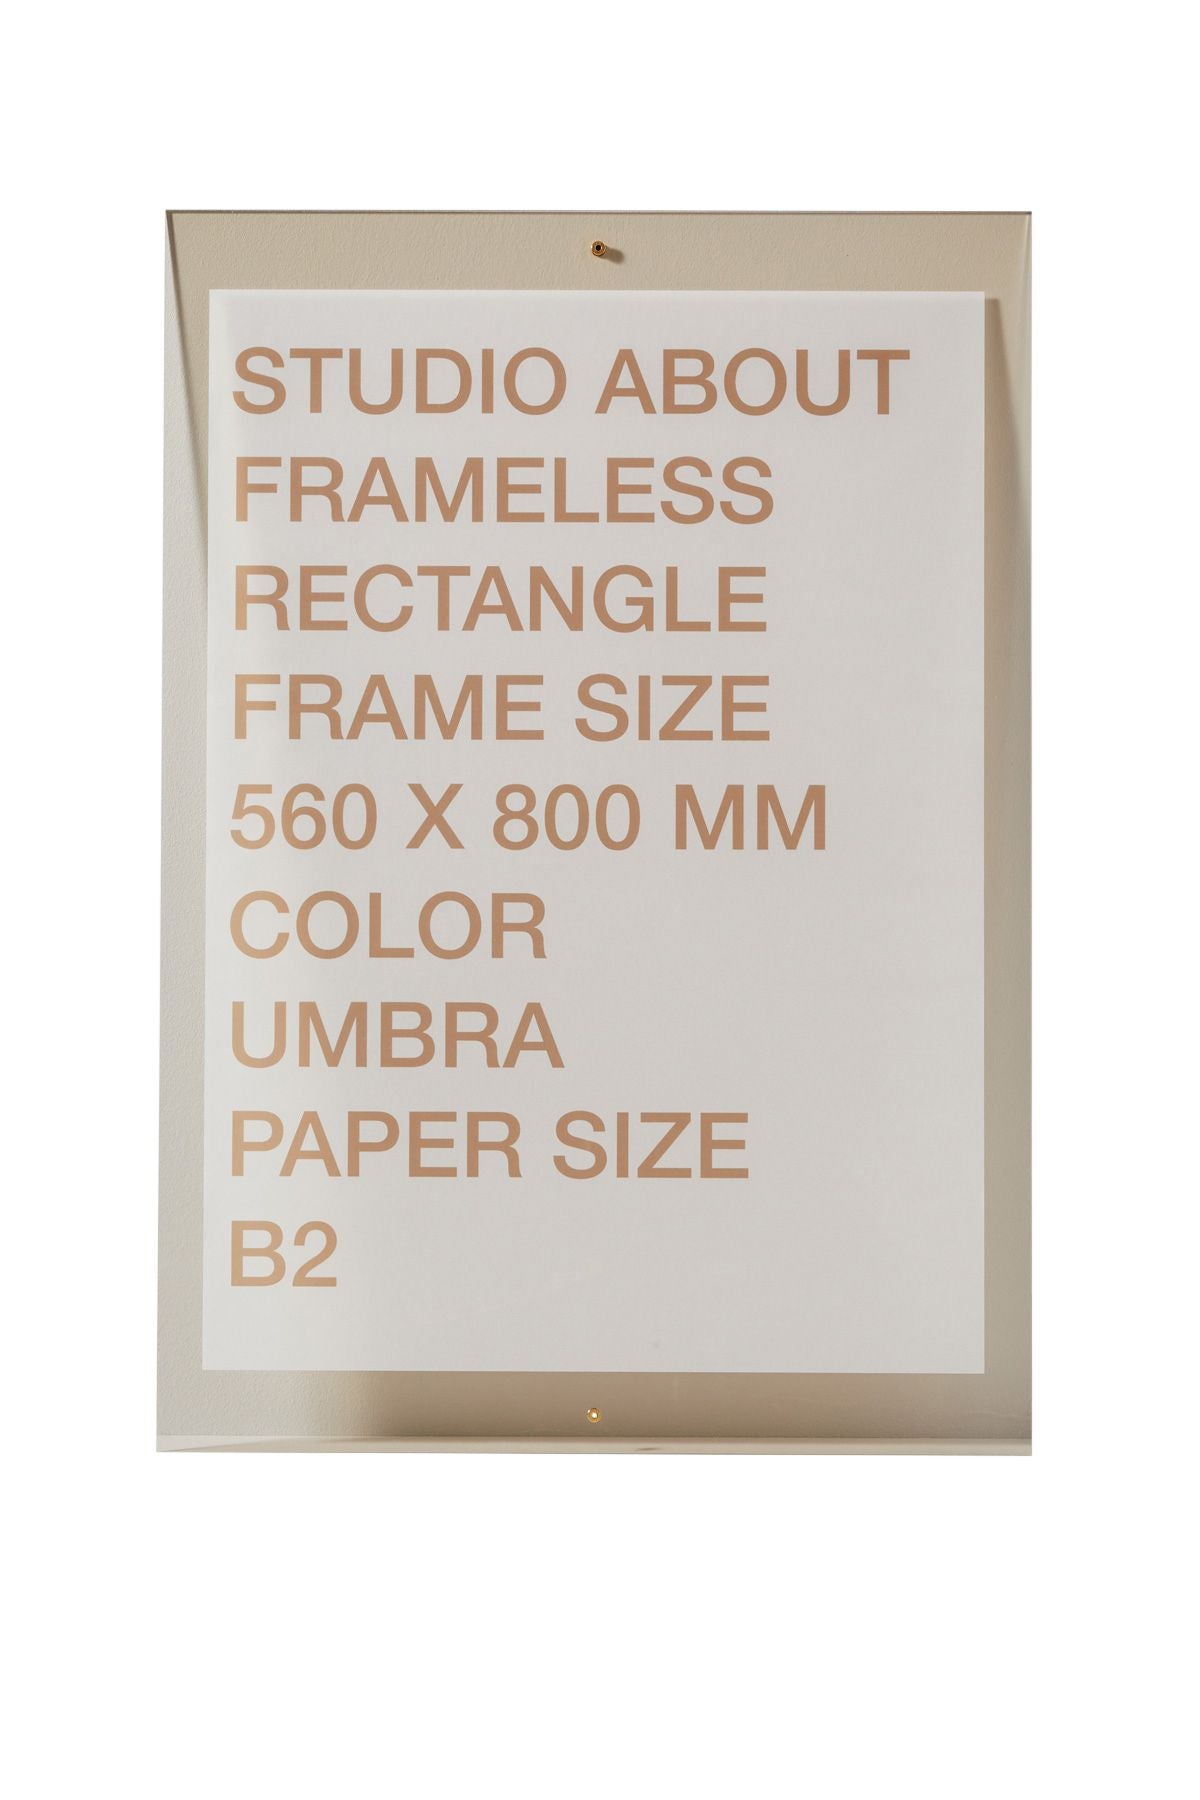 Studio About Frameless Frame B2 Rectangle, Umbra